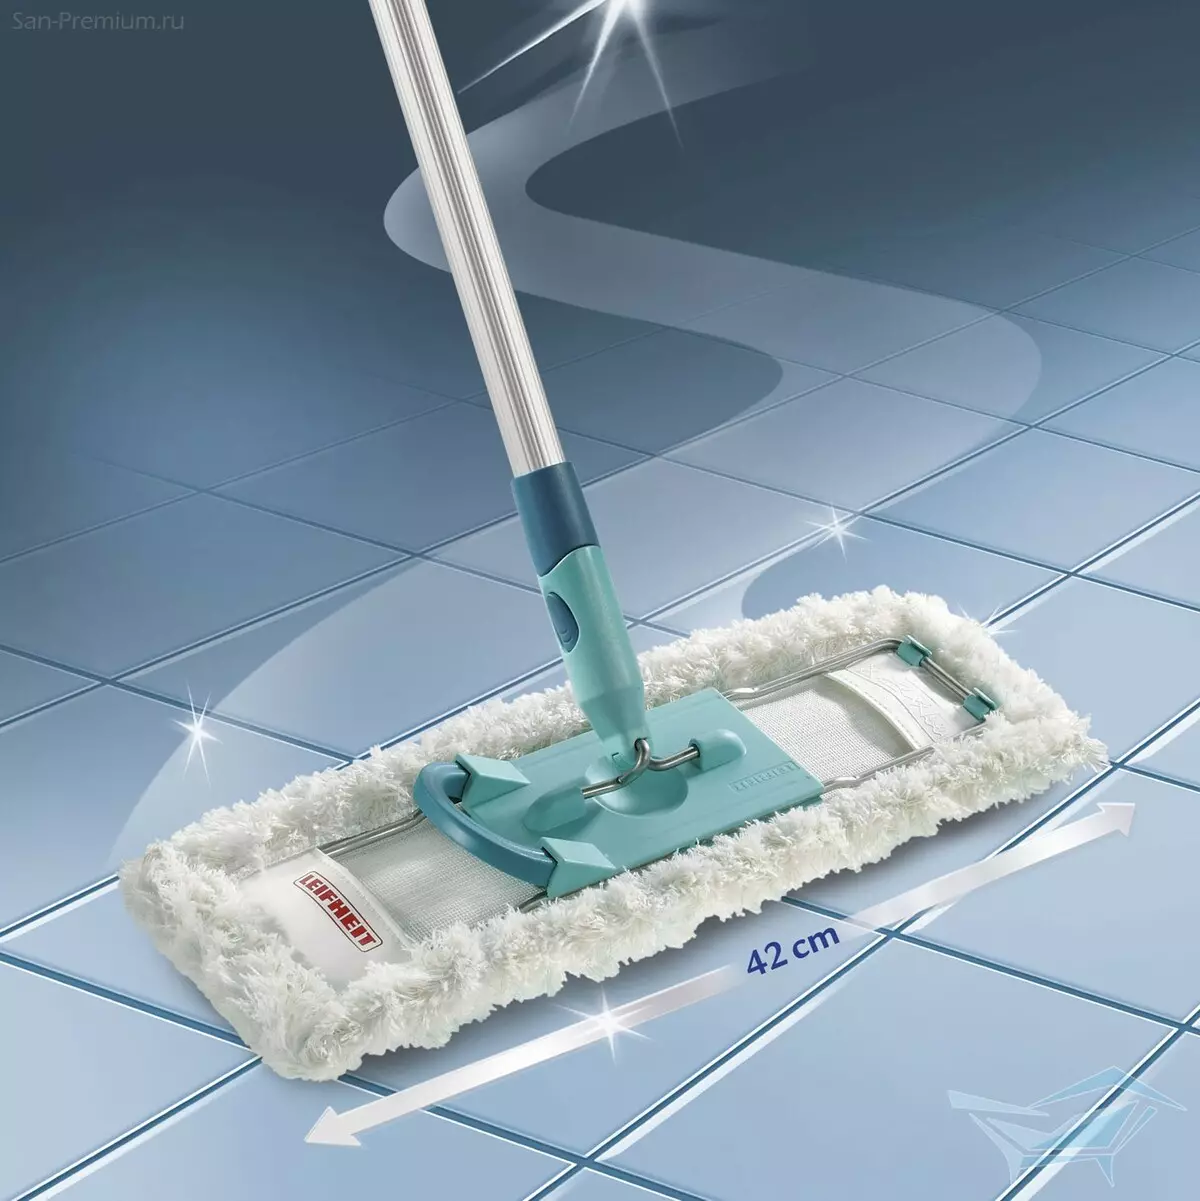 MOPS professionali: per pavimenti e pulizia ampie sale, per la casa, carrelli da casa, metallo e altri mop per pulizia secca e umida 21889_19